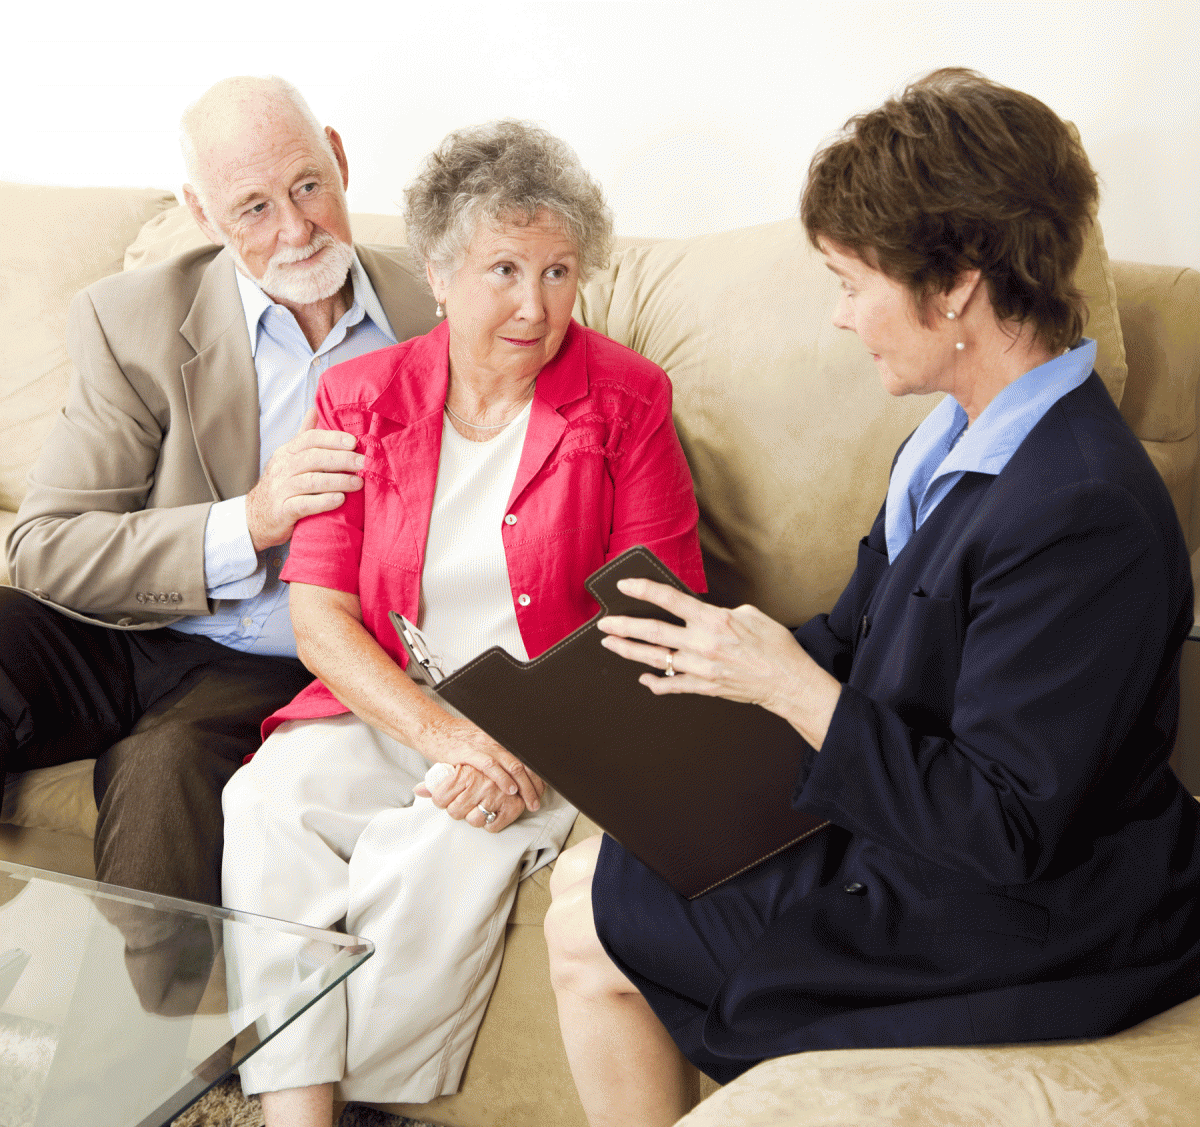 Социально бытовое общение. Консультирование пожилых. Общение с пожилыми людьми. Разговор с пожилым человеком. Беседа с пожилым человеком.